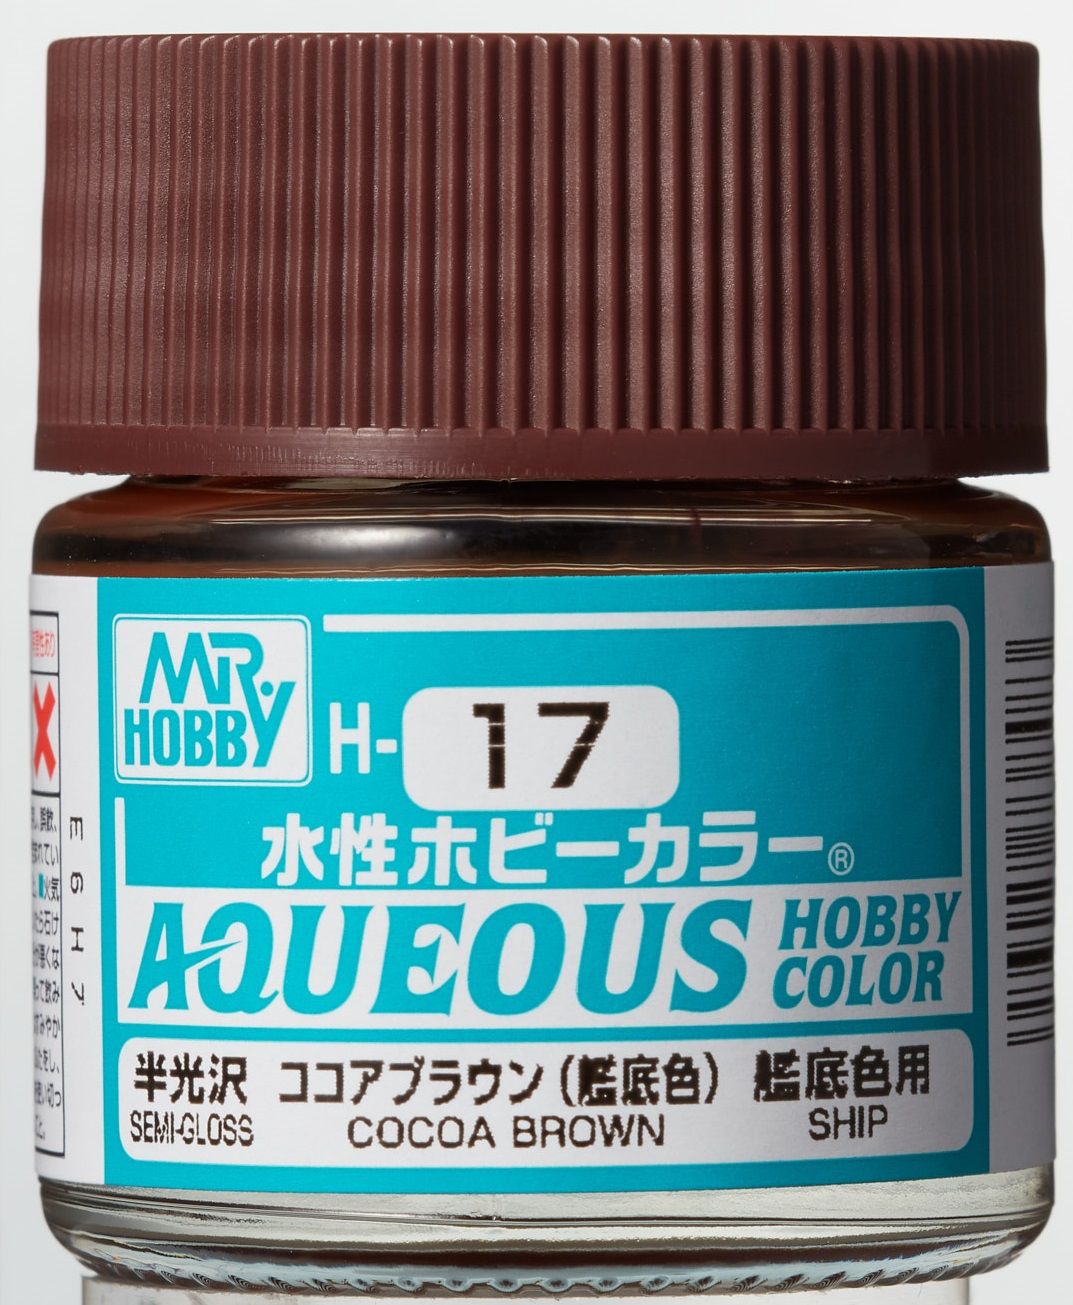 (X) Mr Hobby - Gunze H-017 - Aqueous Hobby Colors (10 ml) Cocoa Brown